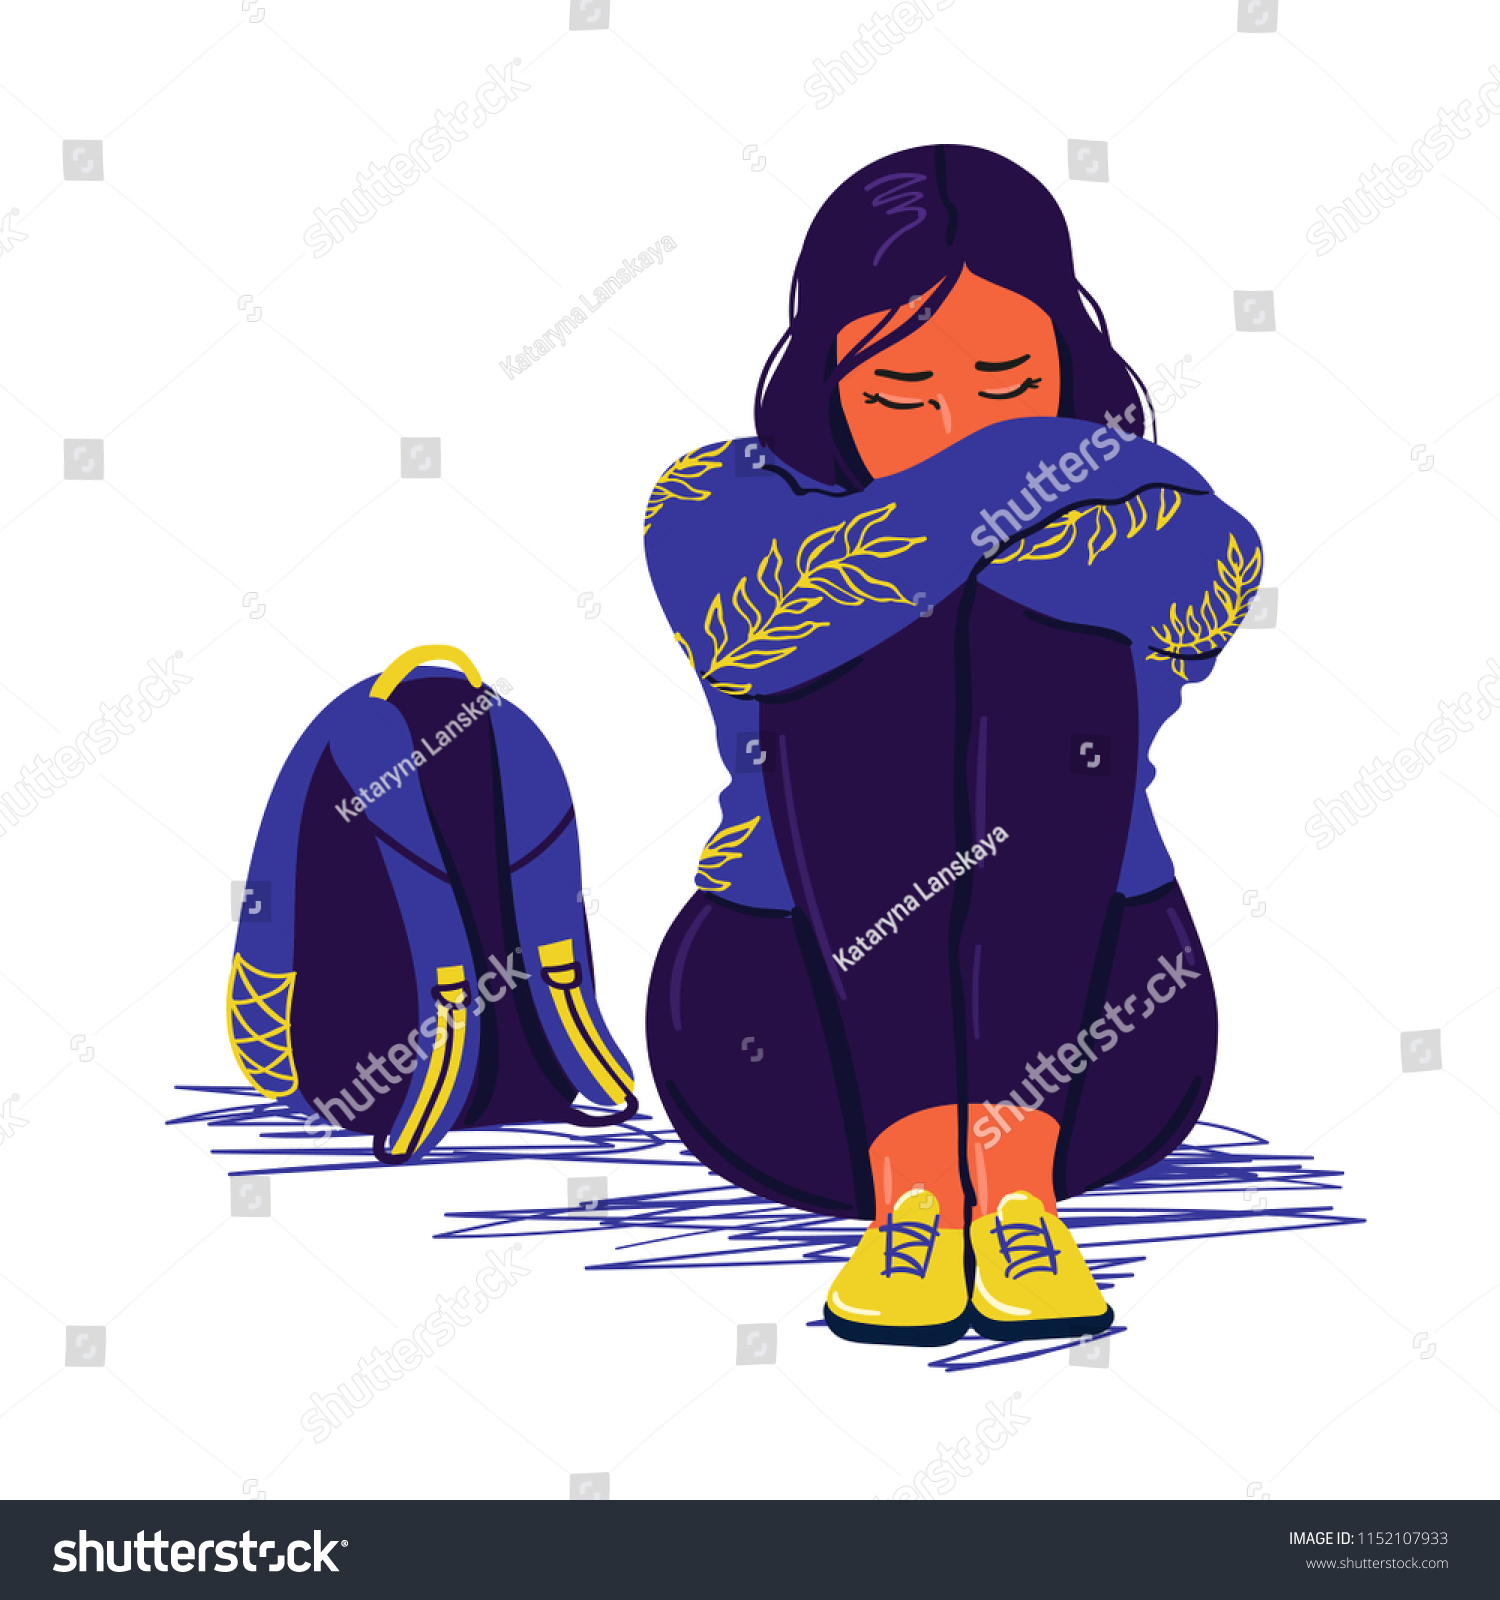 落ち込んだ悲しい女の子が床に座っている 落ち込んだ10代 不幸な悲しい女性とストレスを受けた生徒 クリエイティブなベクターイラスト のベクター画像素材 ロイヤリティフリー